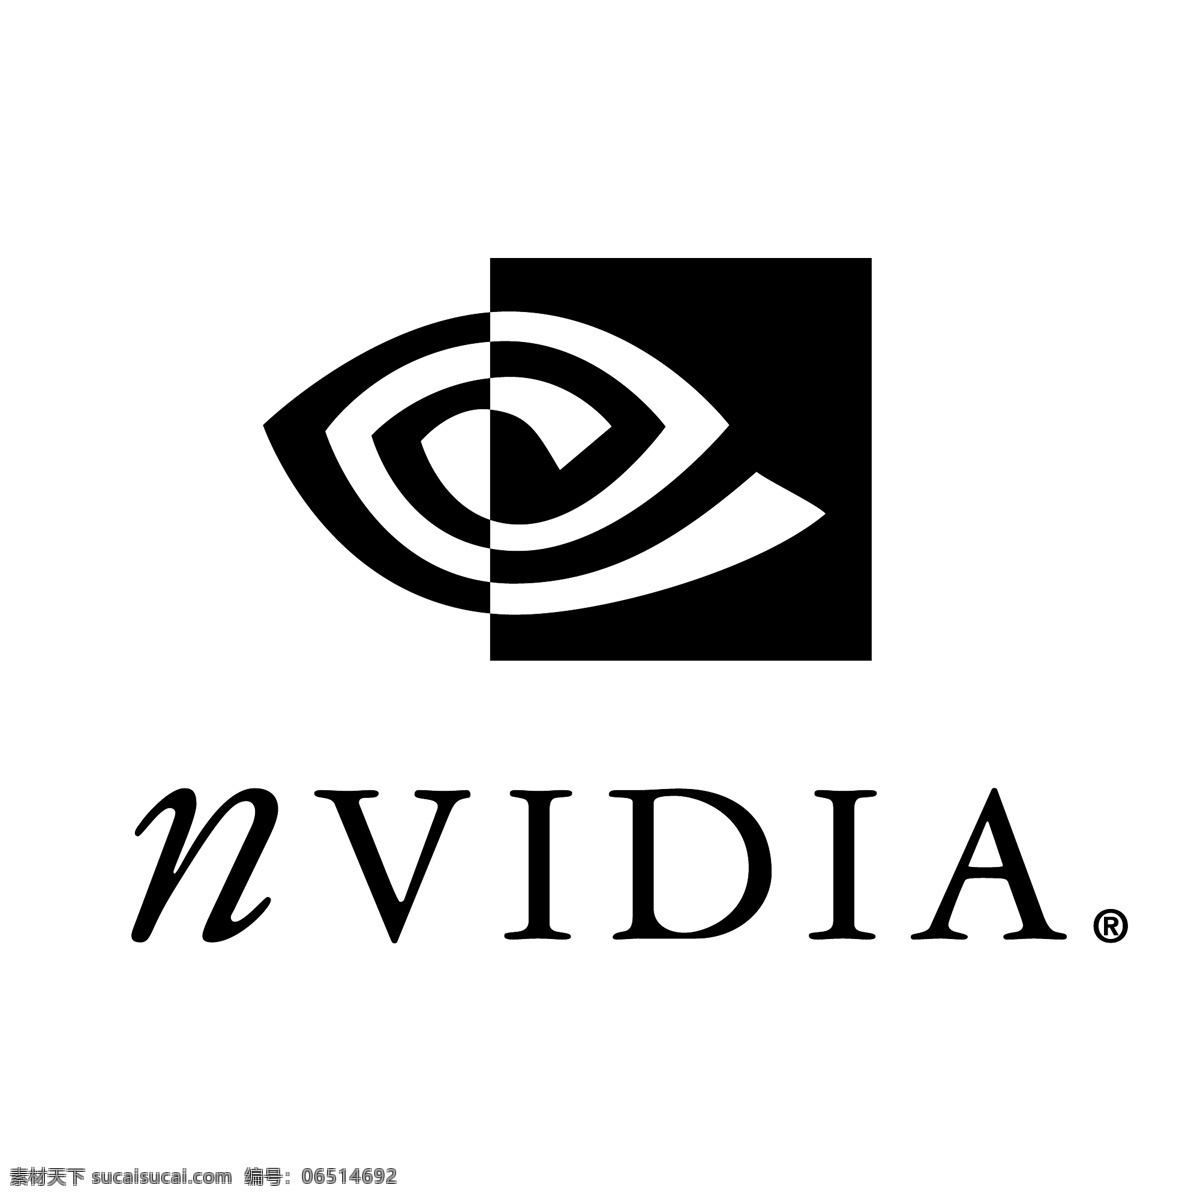 nvidia 标志 矢量 4图形 标识 图形 向量